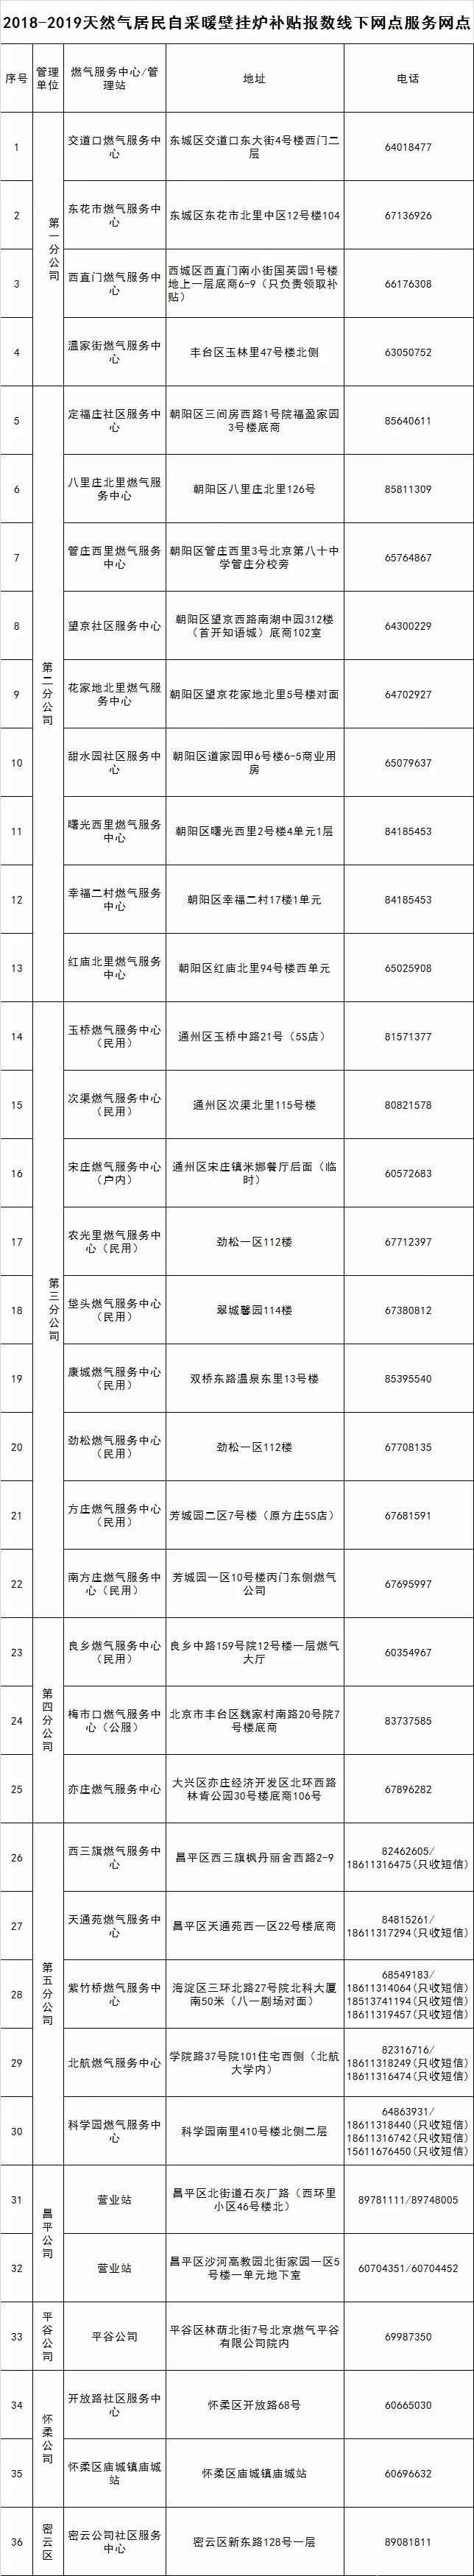 2018-2019北京自采暖补贴申报时间申报入口流程指南[墙根网]